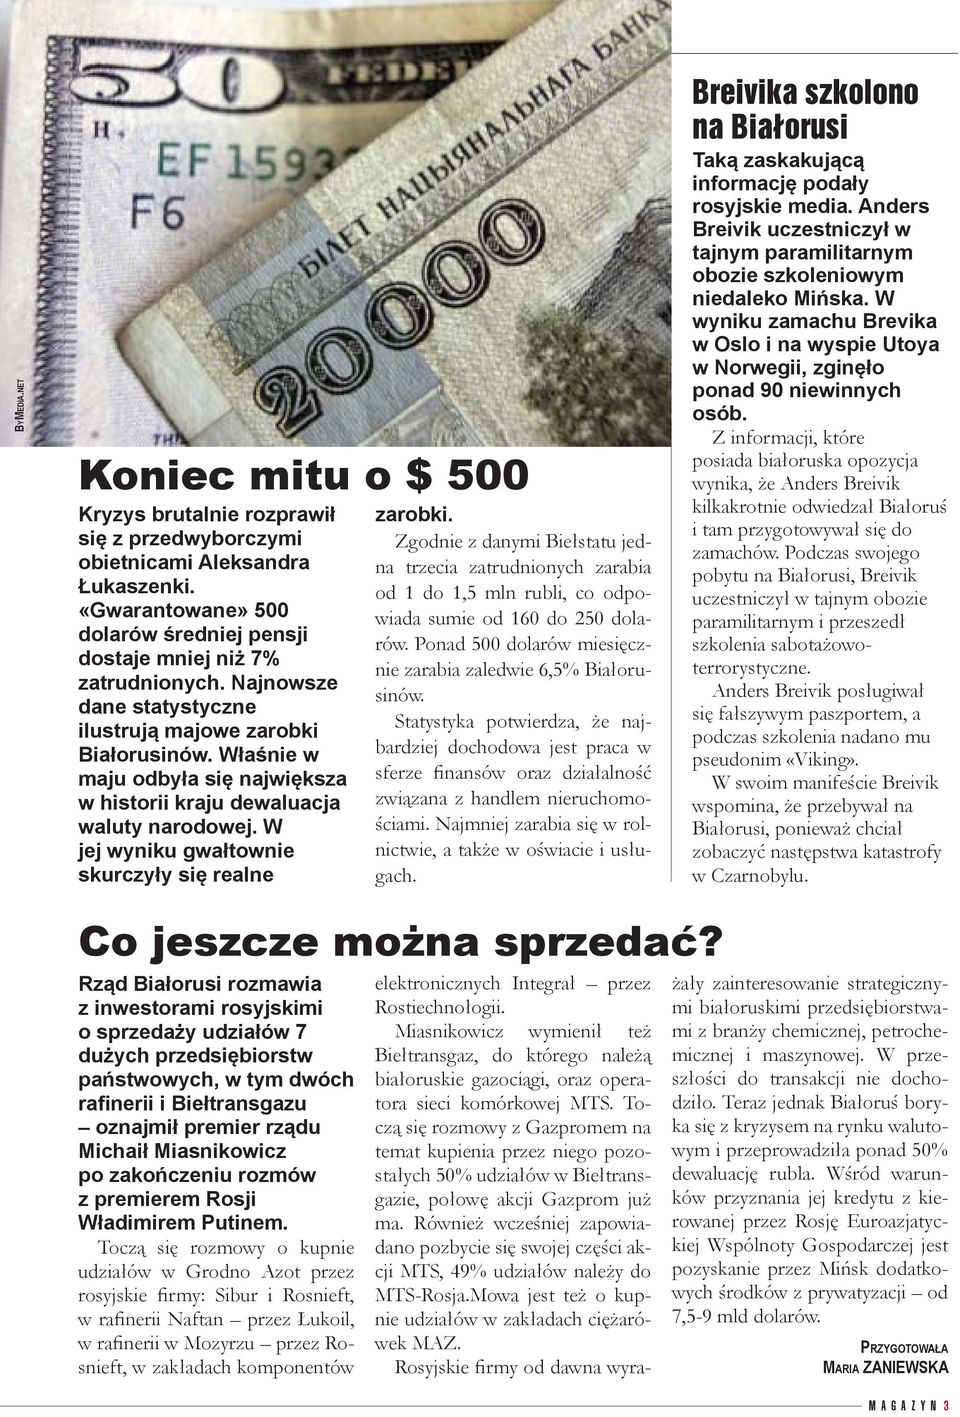 W jej wyniku gwałtownie skurczyły się realne zarobki. Zgodnie z danymi Biełstatu jedna trzecia zatrudnionych zarabia od 1 do 1,5 mln rubli, co odpowiada sumie od 160 do 250 dolarów.